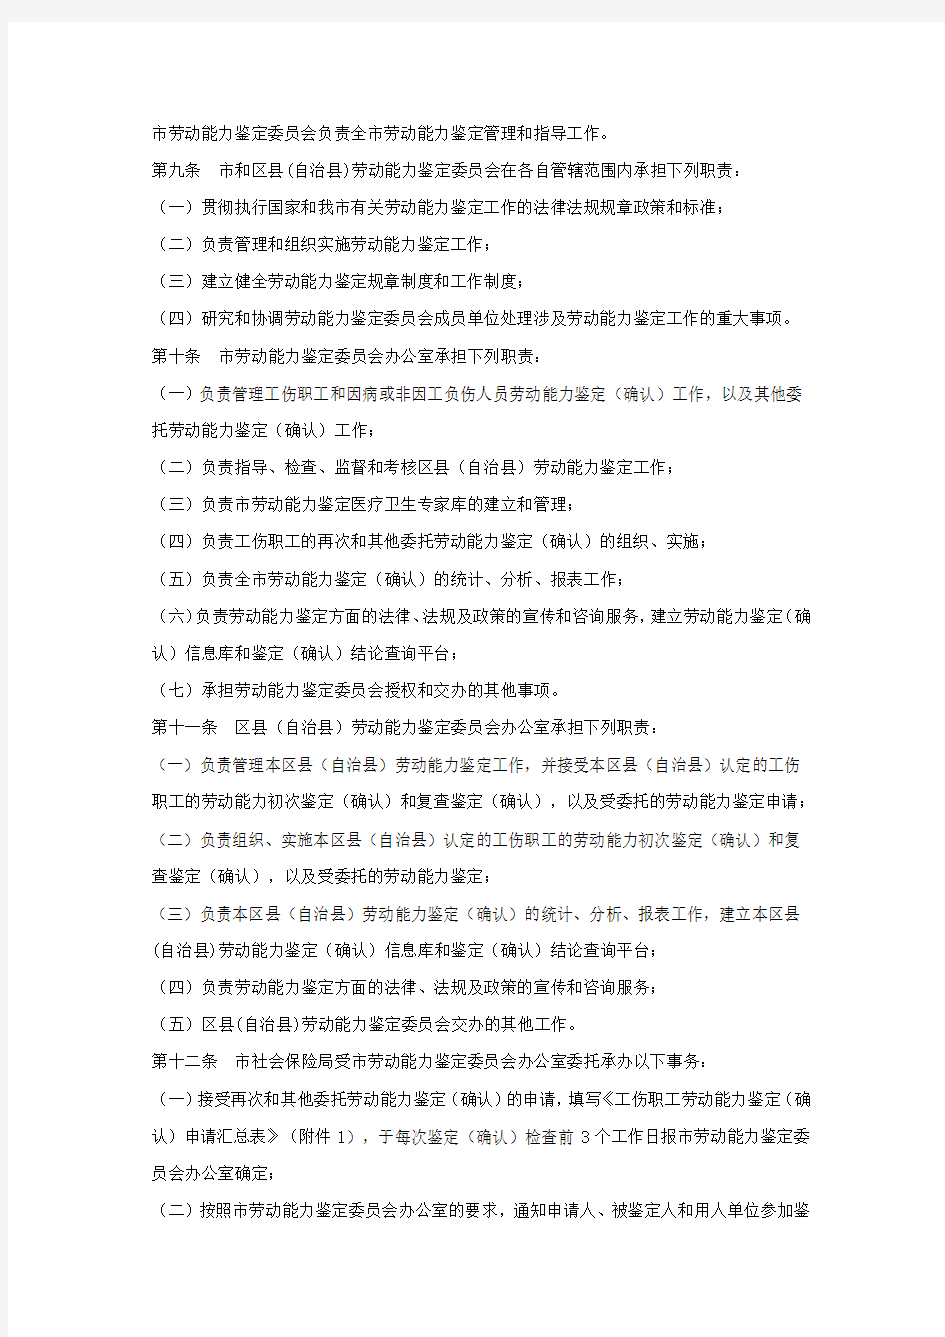 重庆市工伤职工劳动能力鉴定管理办法